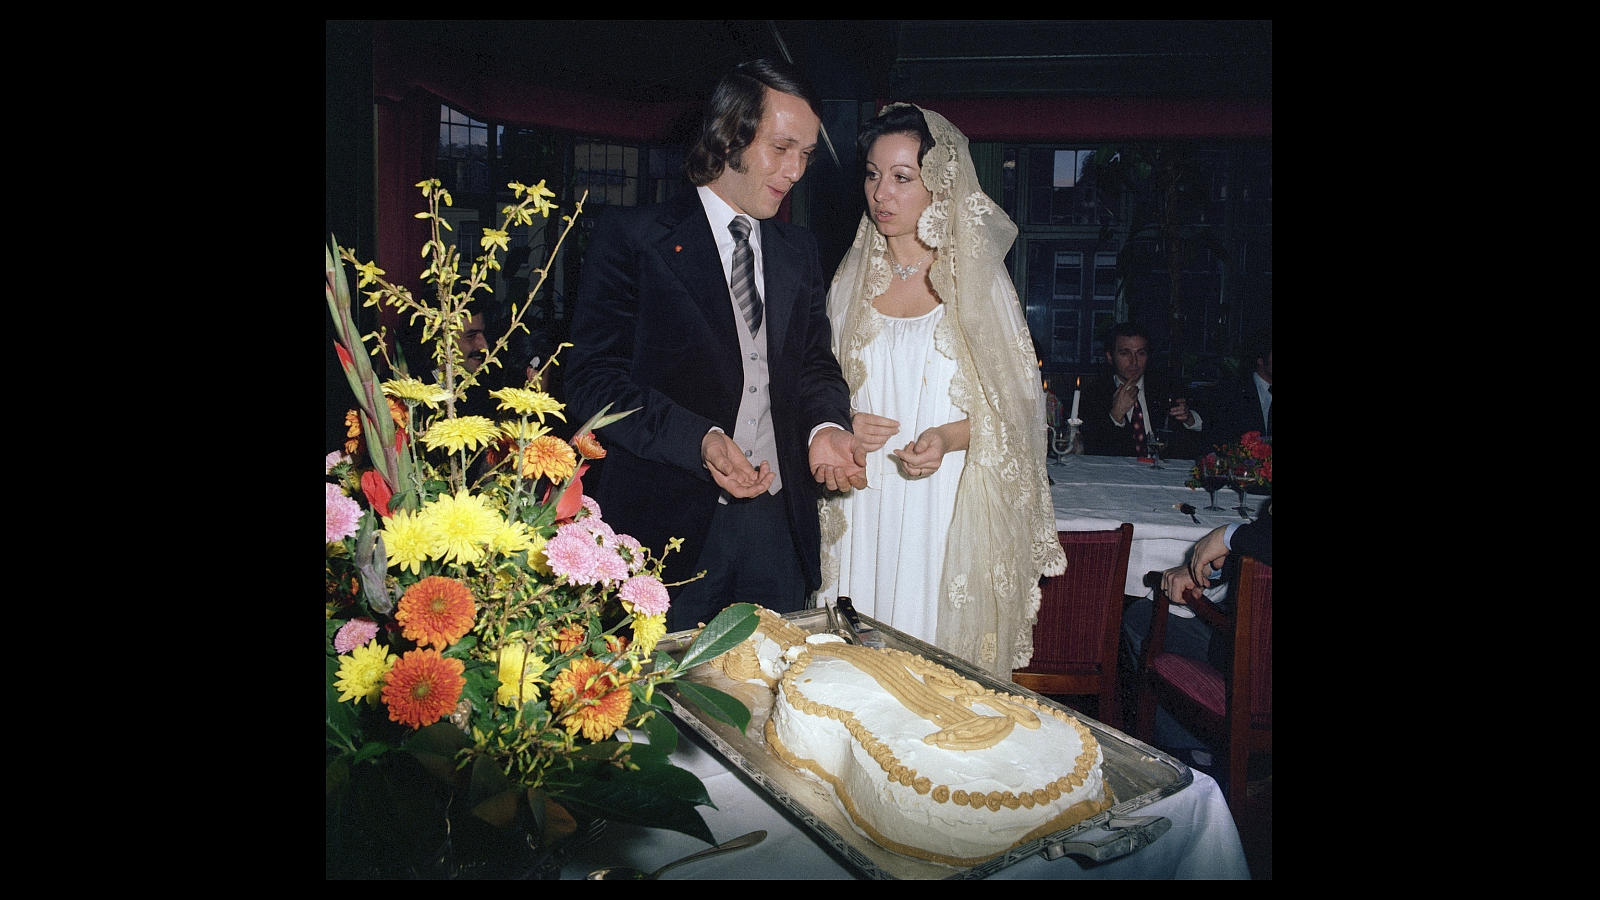 Paco de Lucía y Casilda Varela parten la tradicional tarta nupcial, después de contraer matrimonio en la iglesia de Beyinhorf, en el centro de Amsterdam (1977)